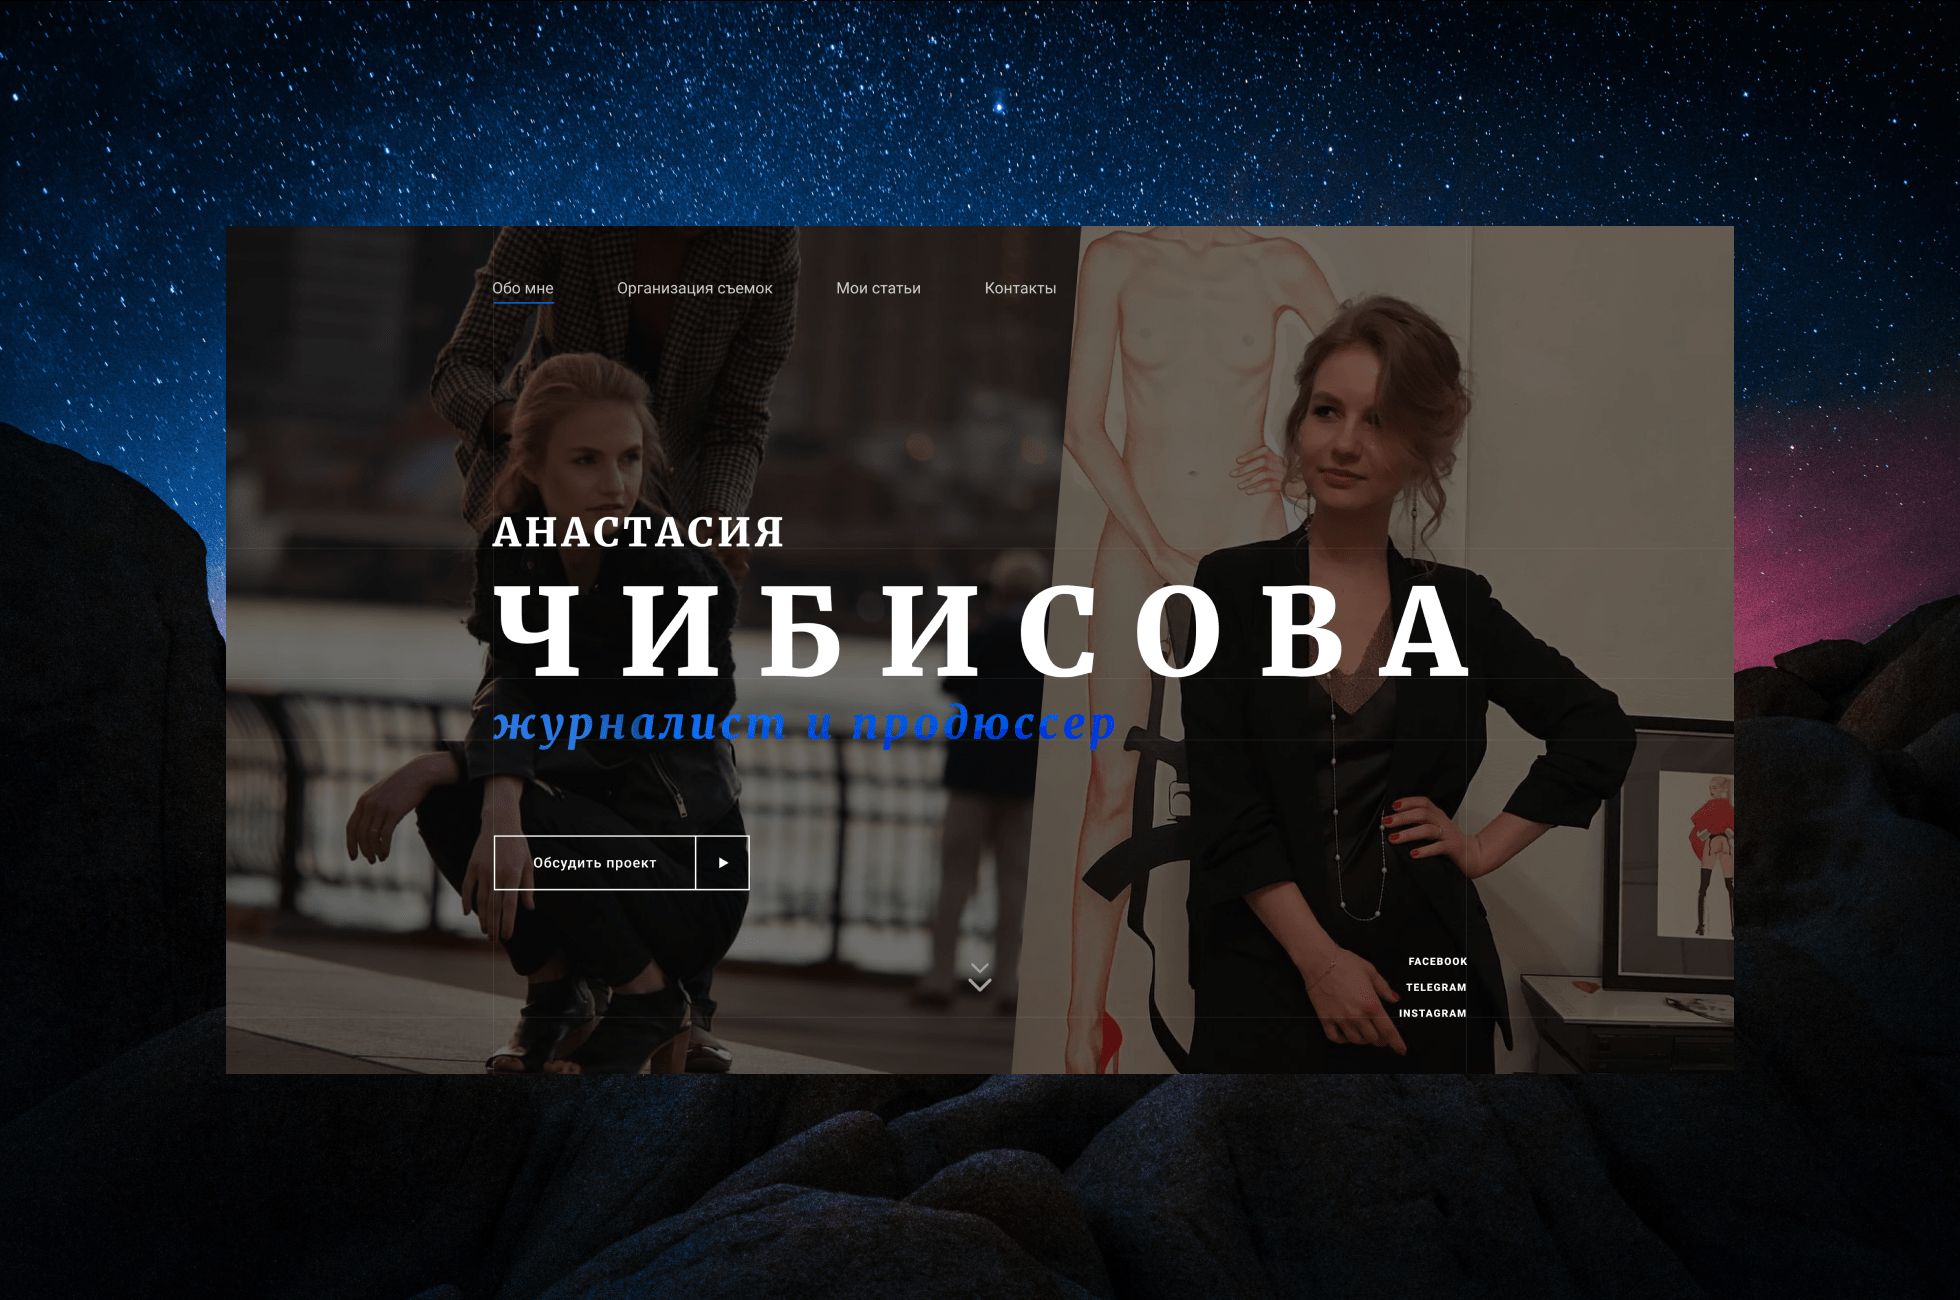 Веб-сайт для chibisova.com - дизайнер SorosTeam